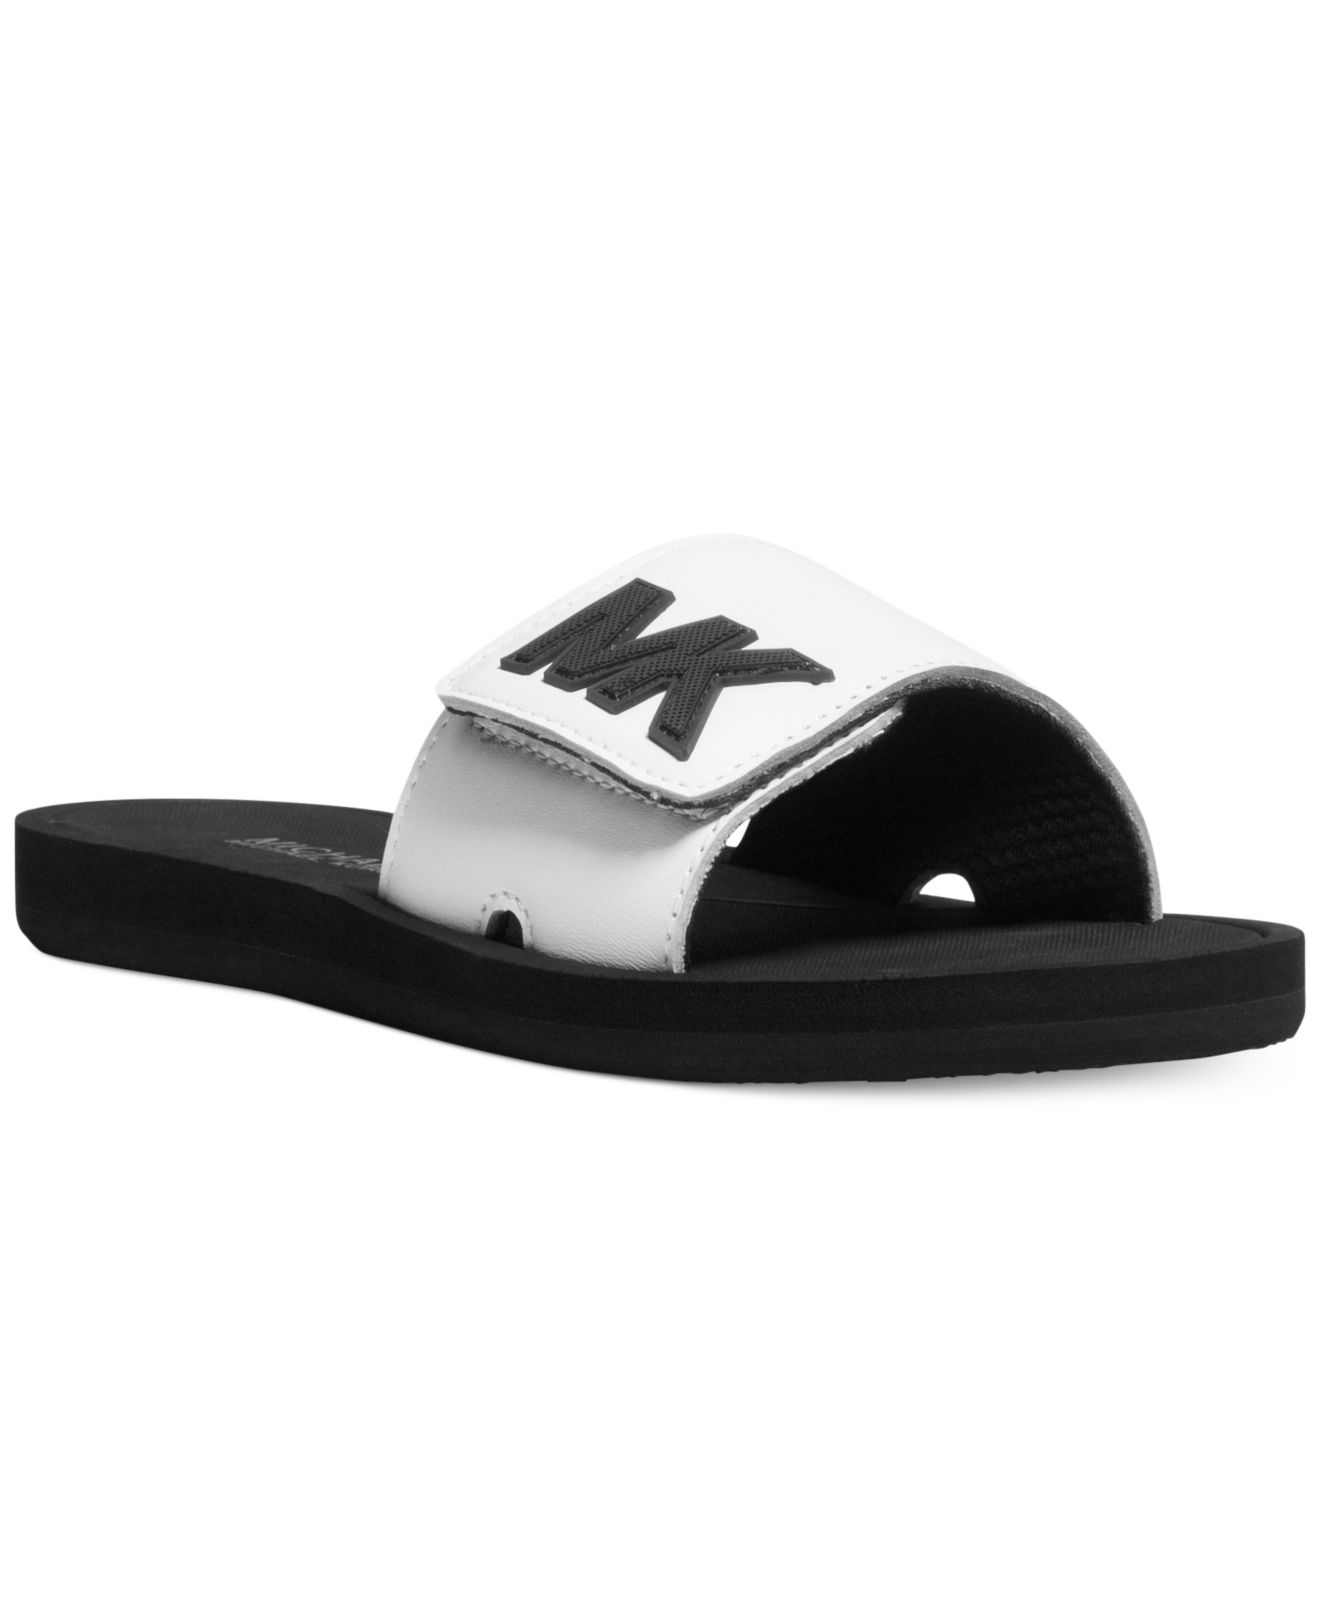 michael kors slide shoes